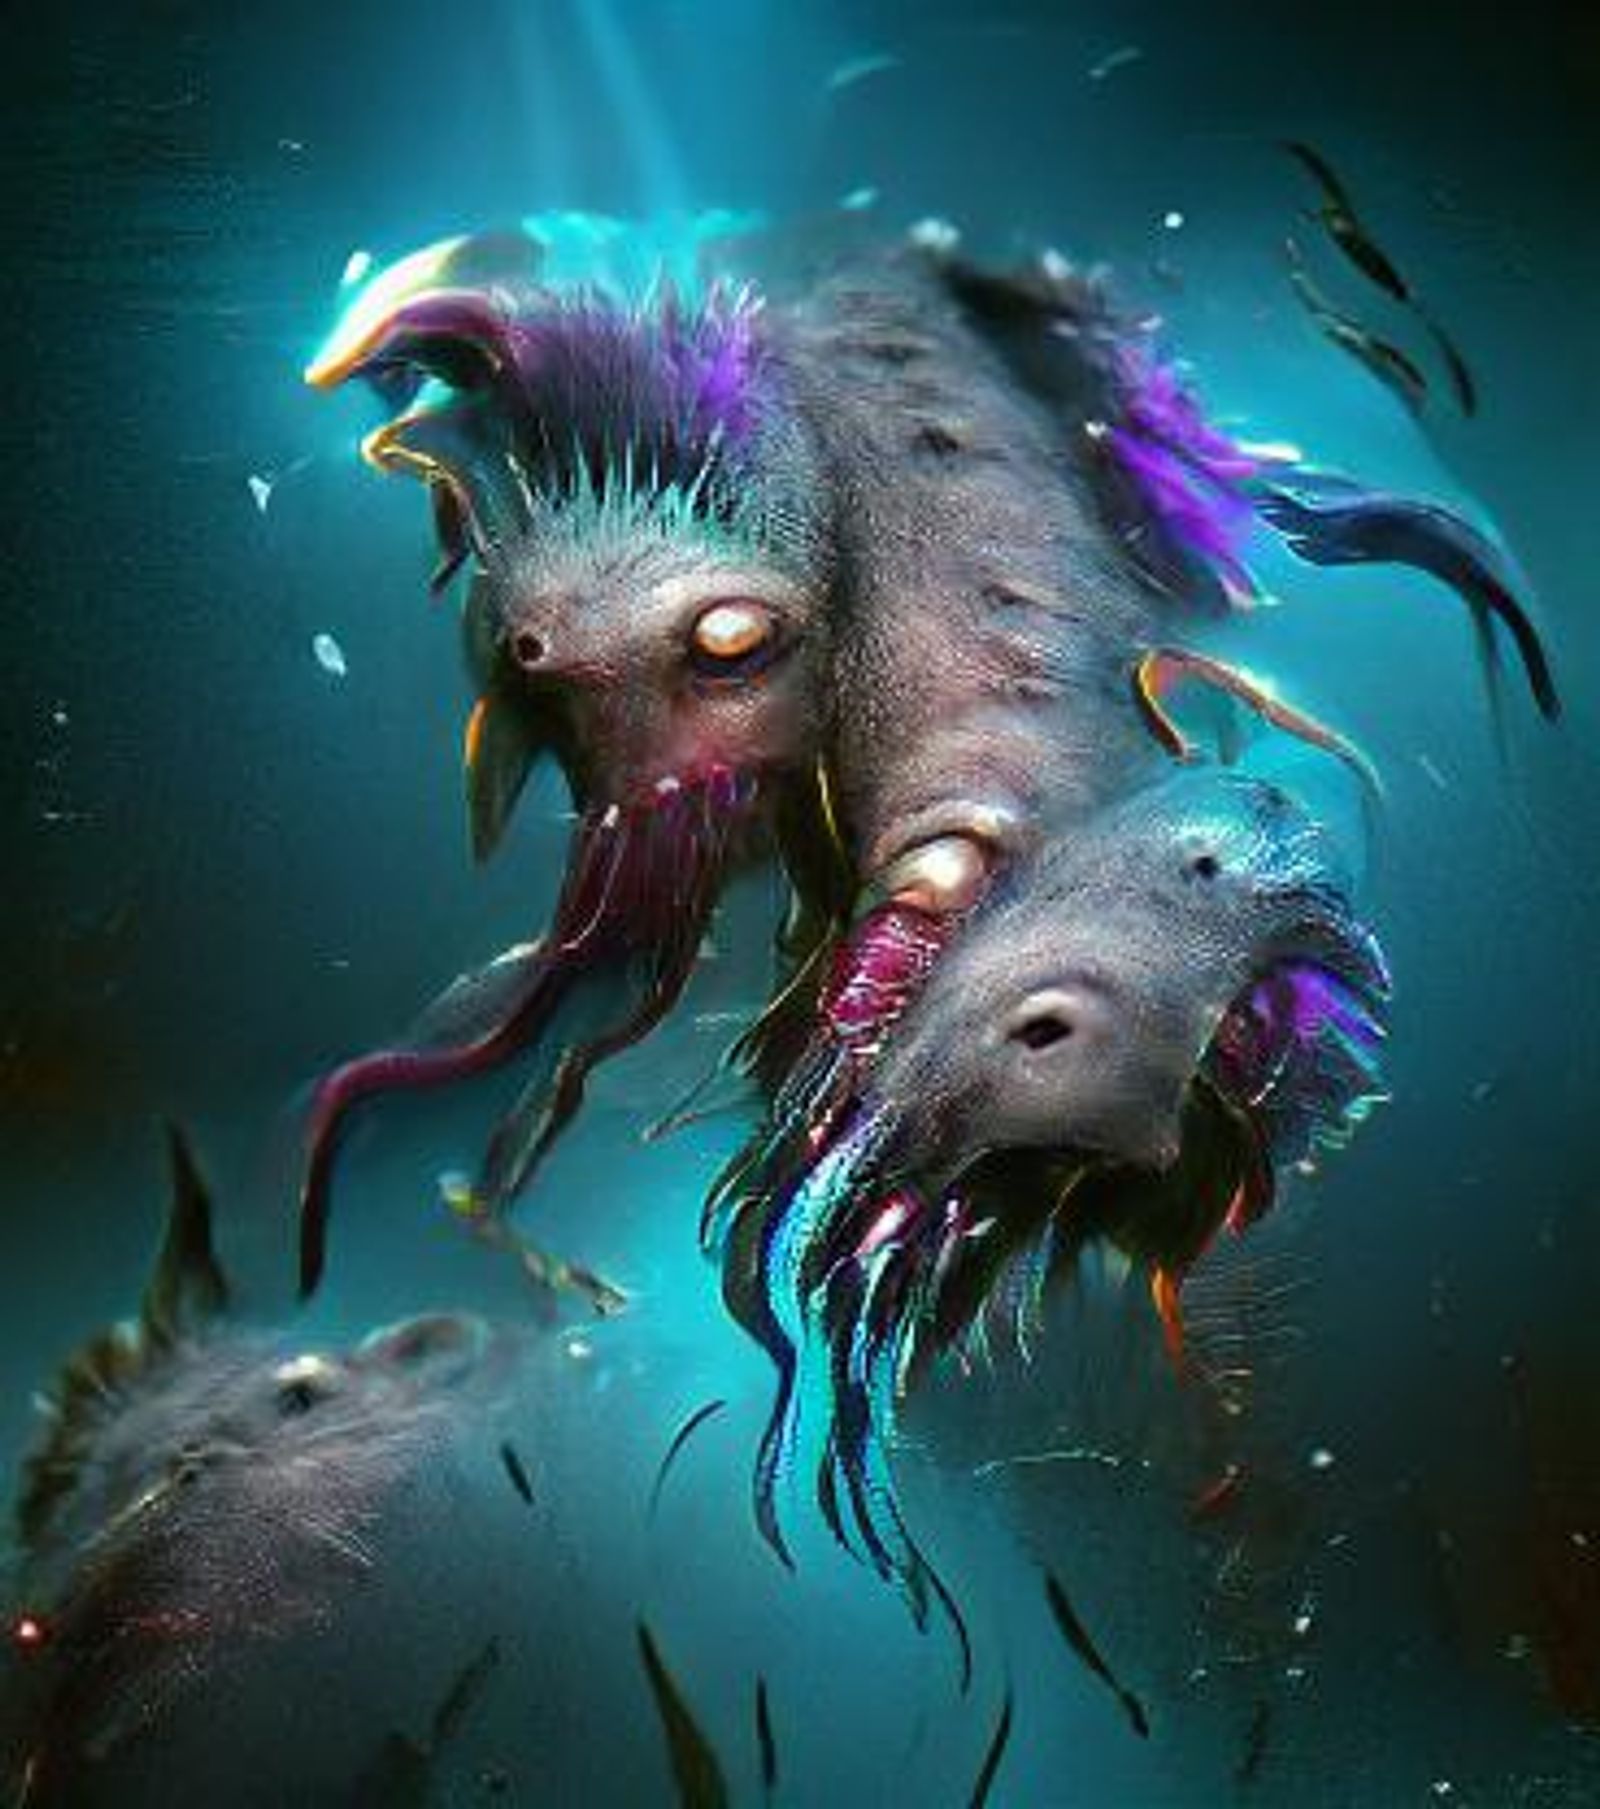 deep sea monster art